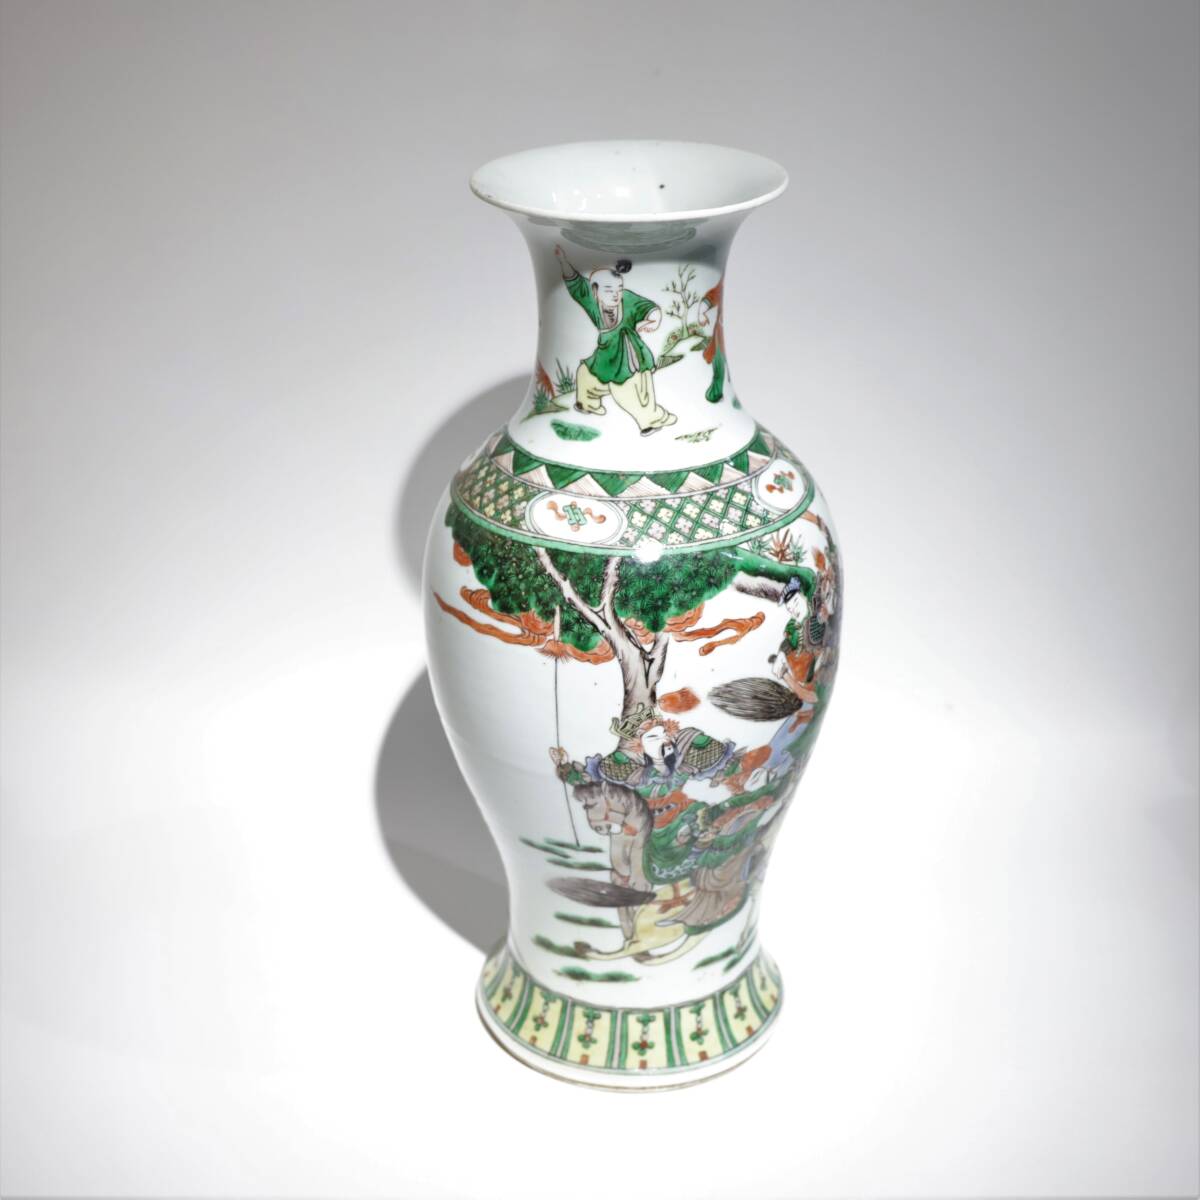 清中期 五彩三英戰布故事觀音瓶 中国美術 粉彩 花瓶 華道具 中国古玩 置物